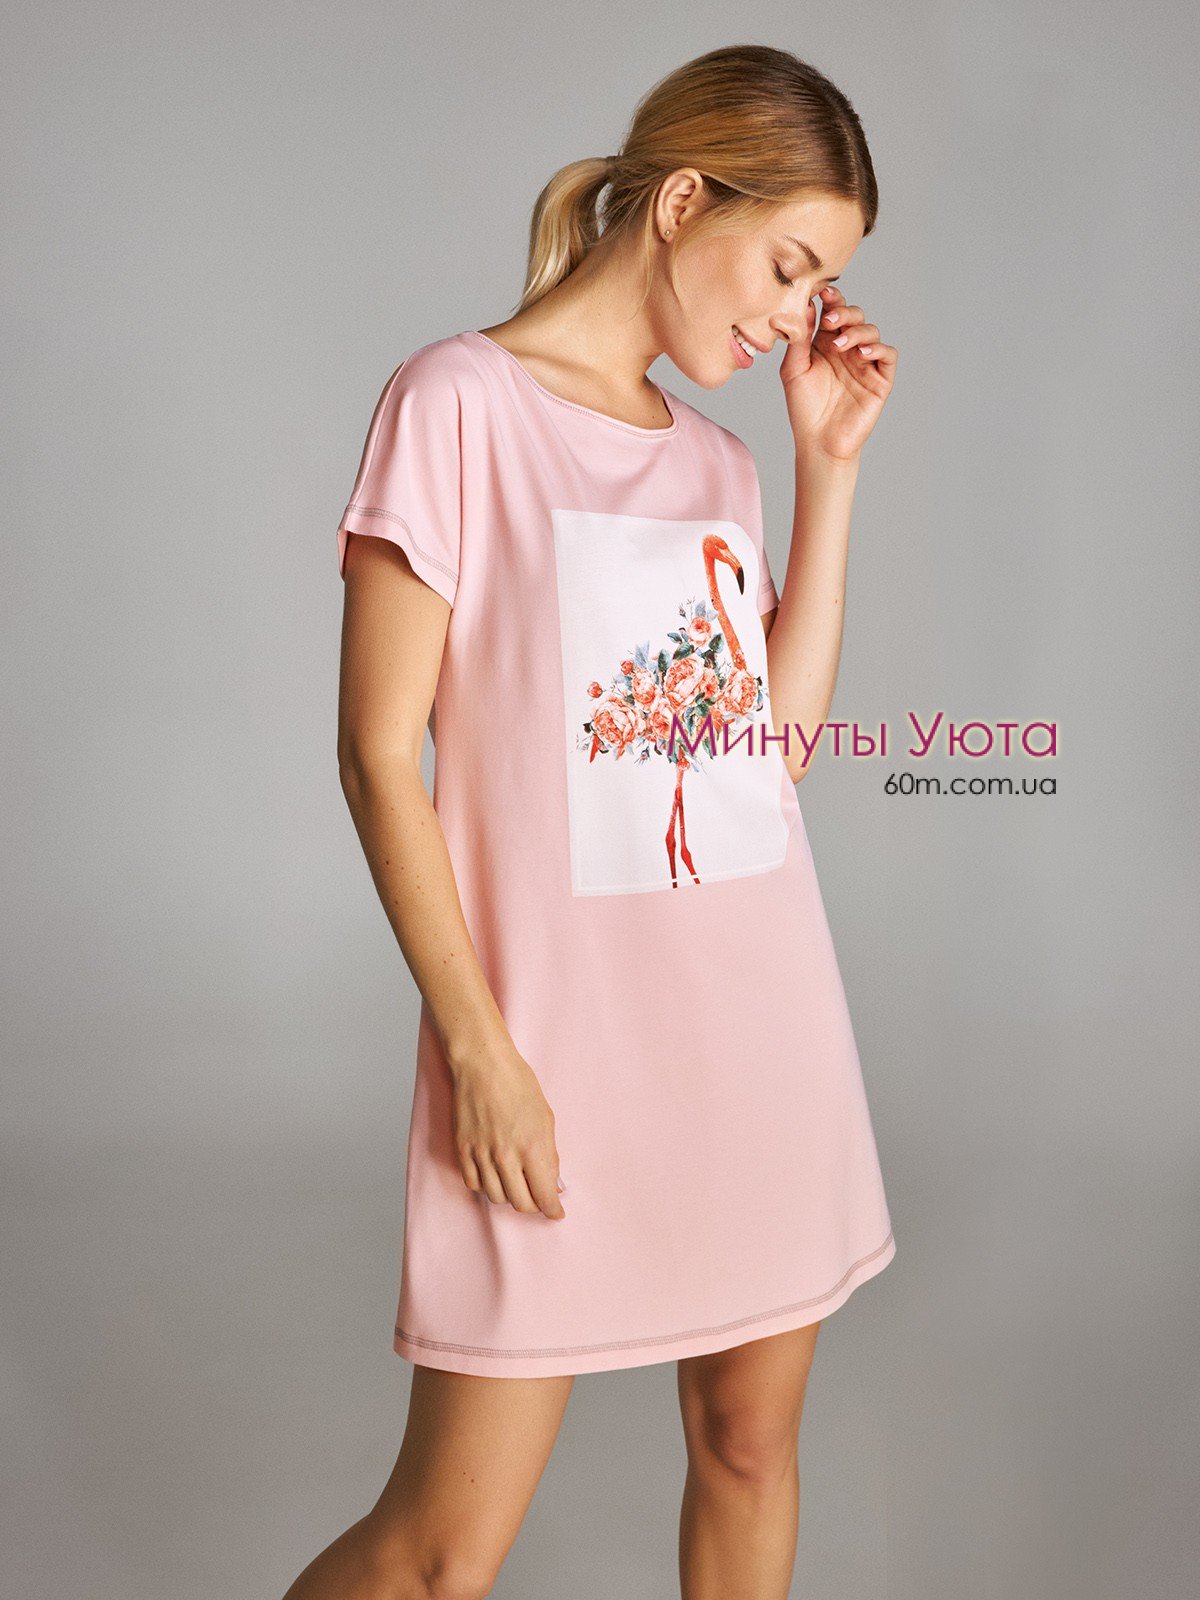 Женская ночная сорочка с принтом фламинго в розовом цвете свободного кроя Ellen